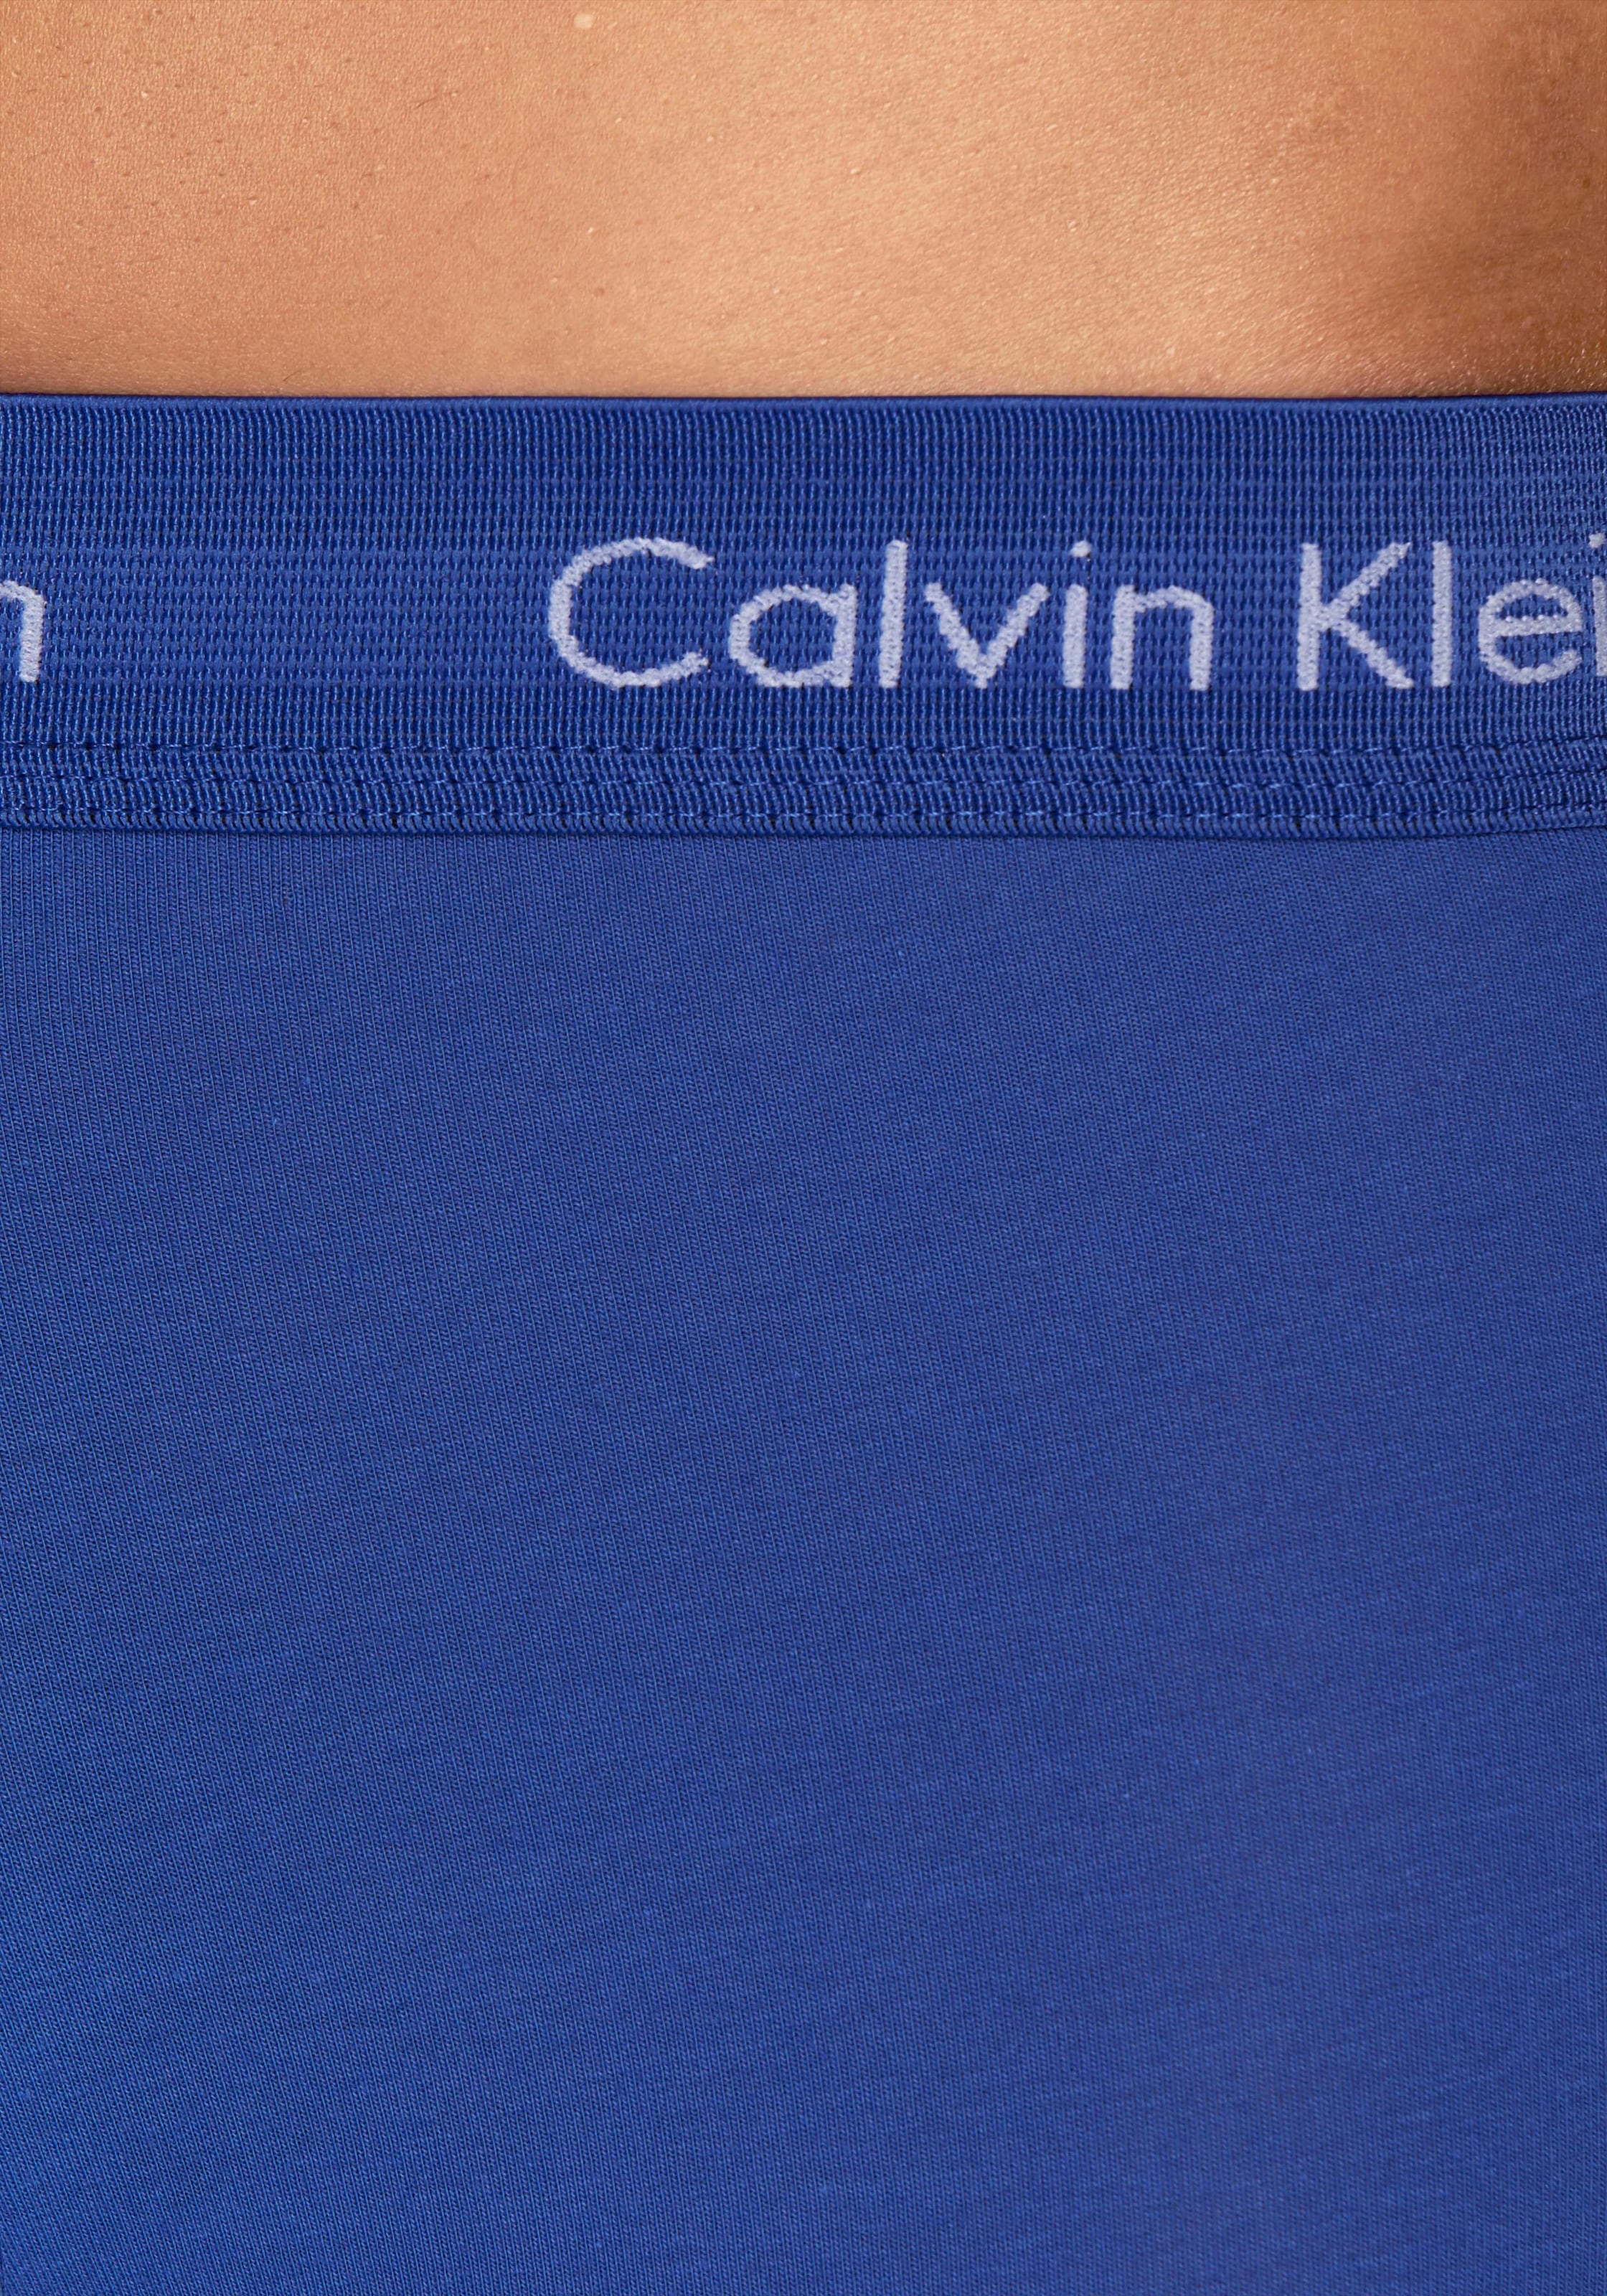 Calvin Klein Underwear Hipster, (3 St.), in blautönen